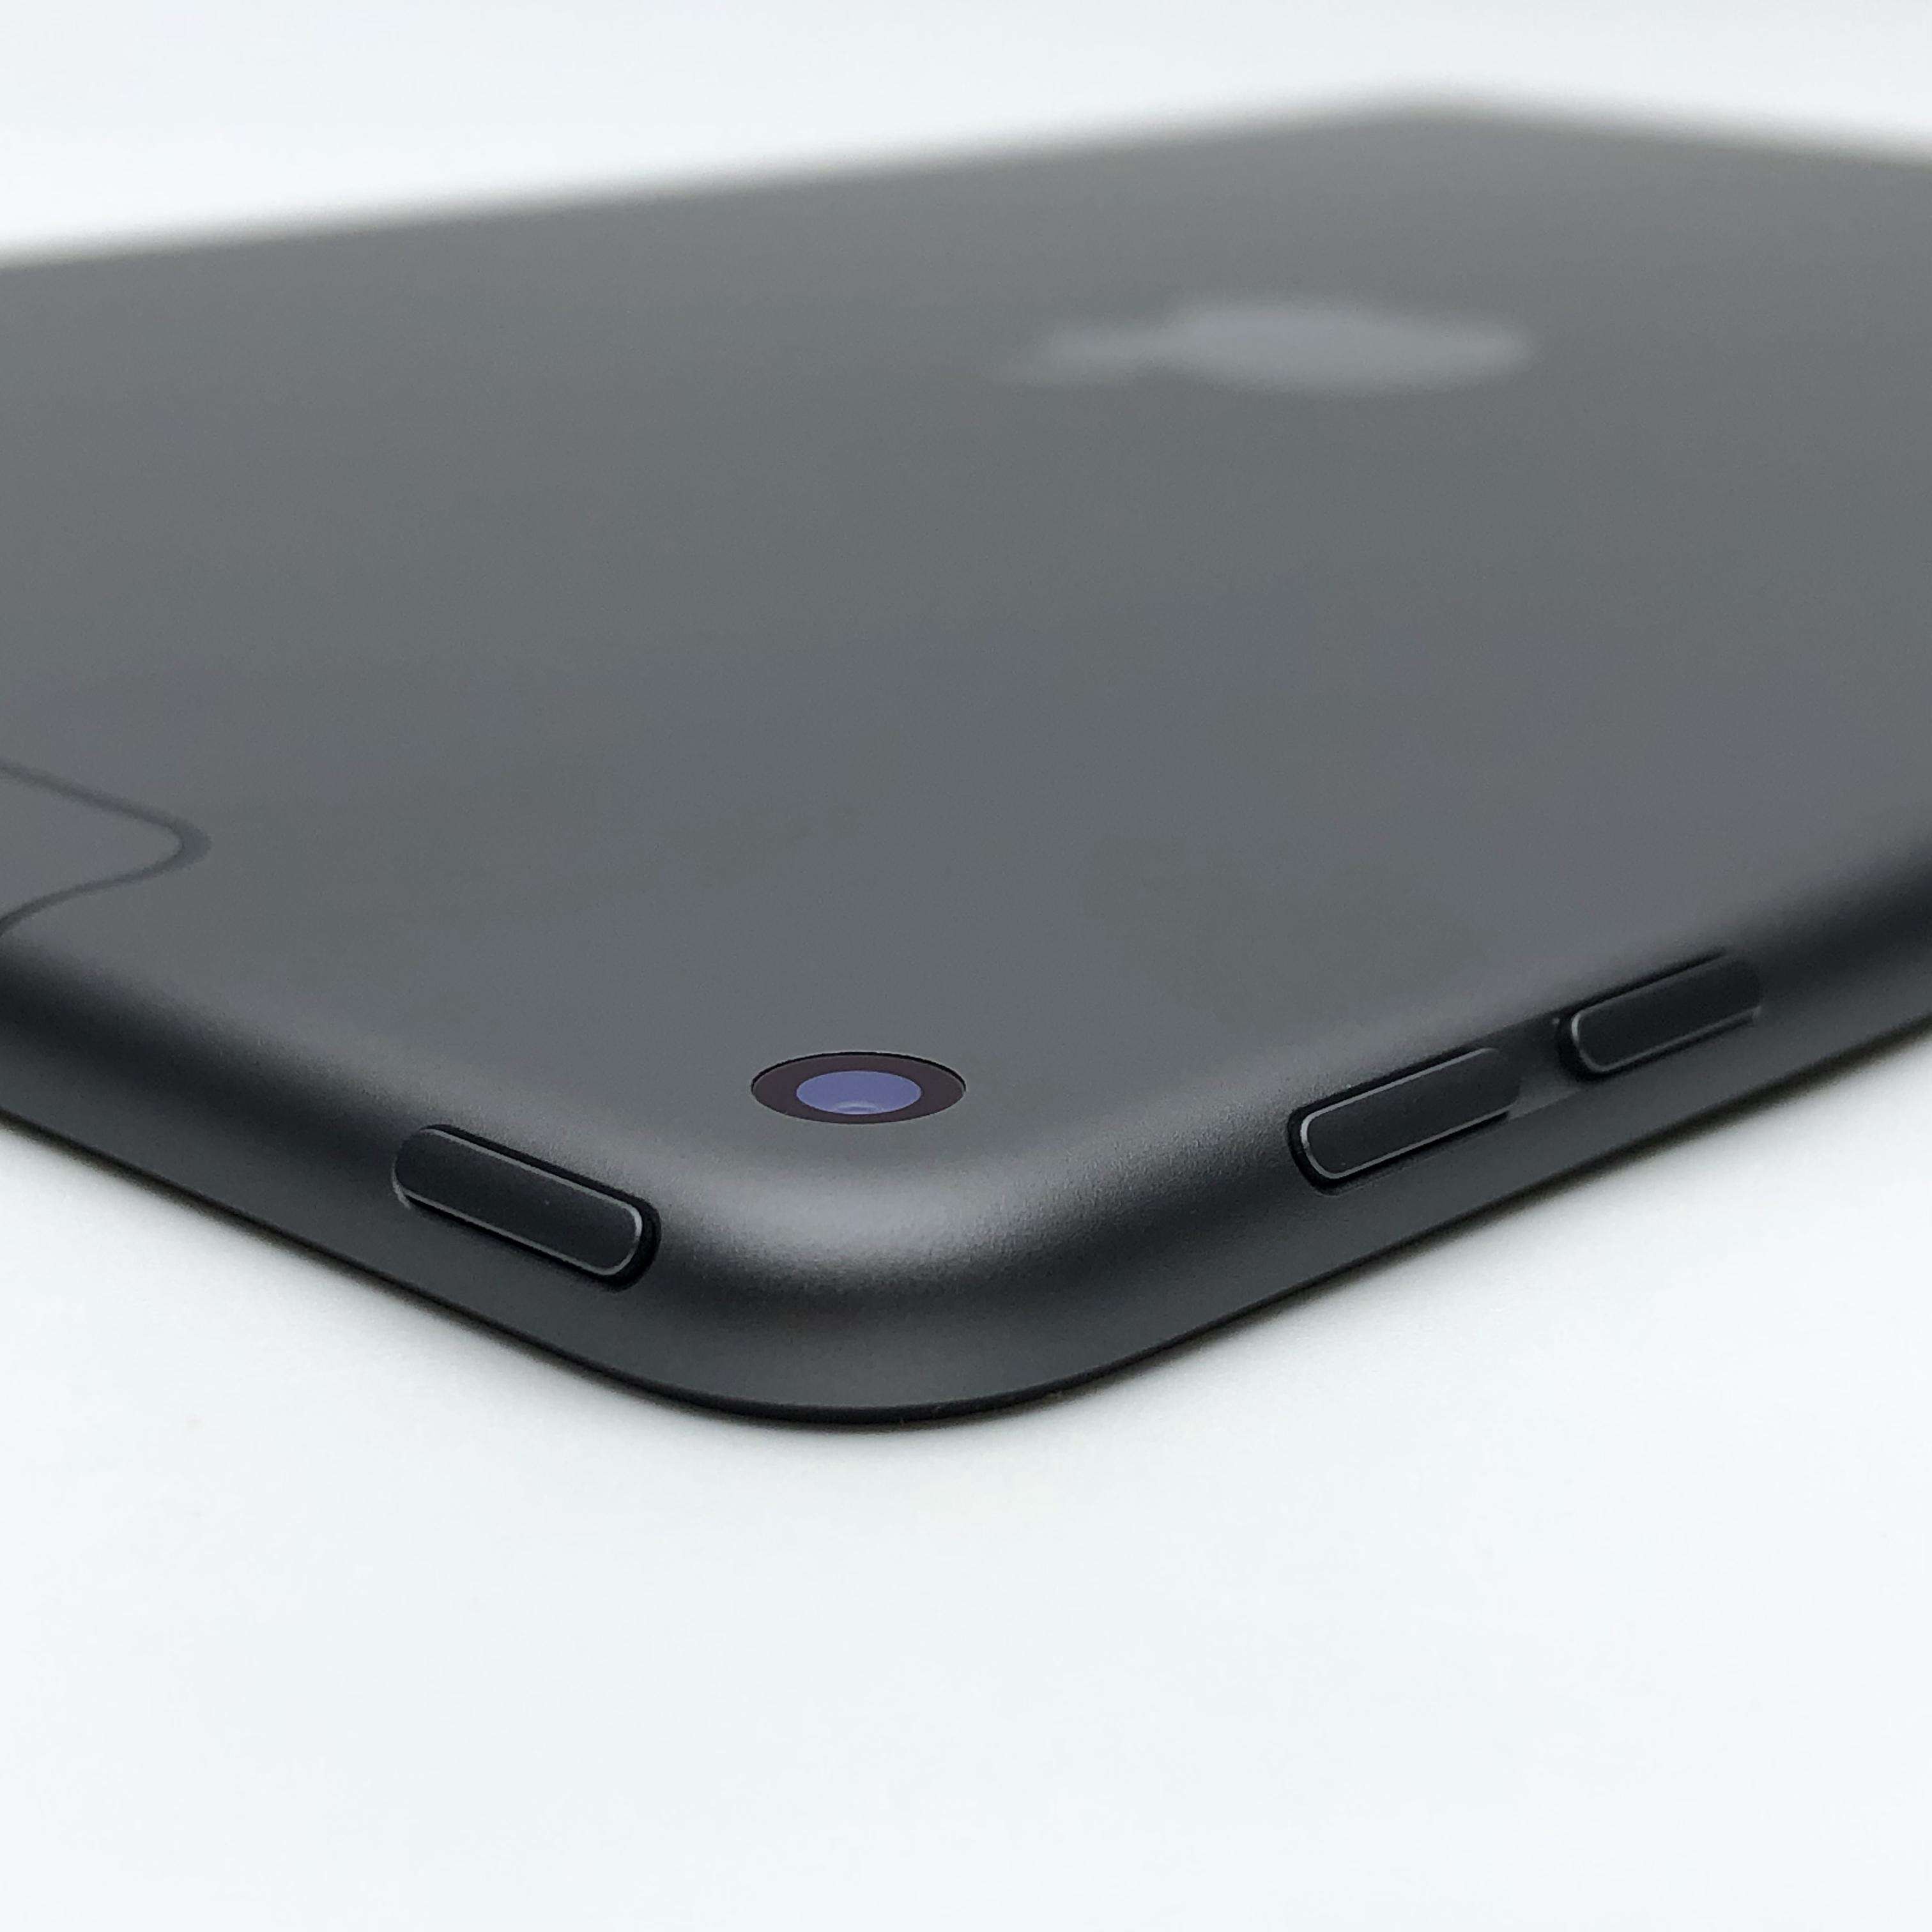 2020款MacBook Air 深空灰简单开箱与iPad Pro对比感受_笔记本电脑_什么值得买